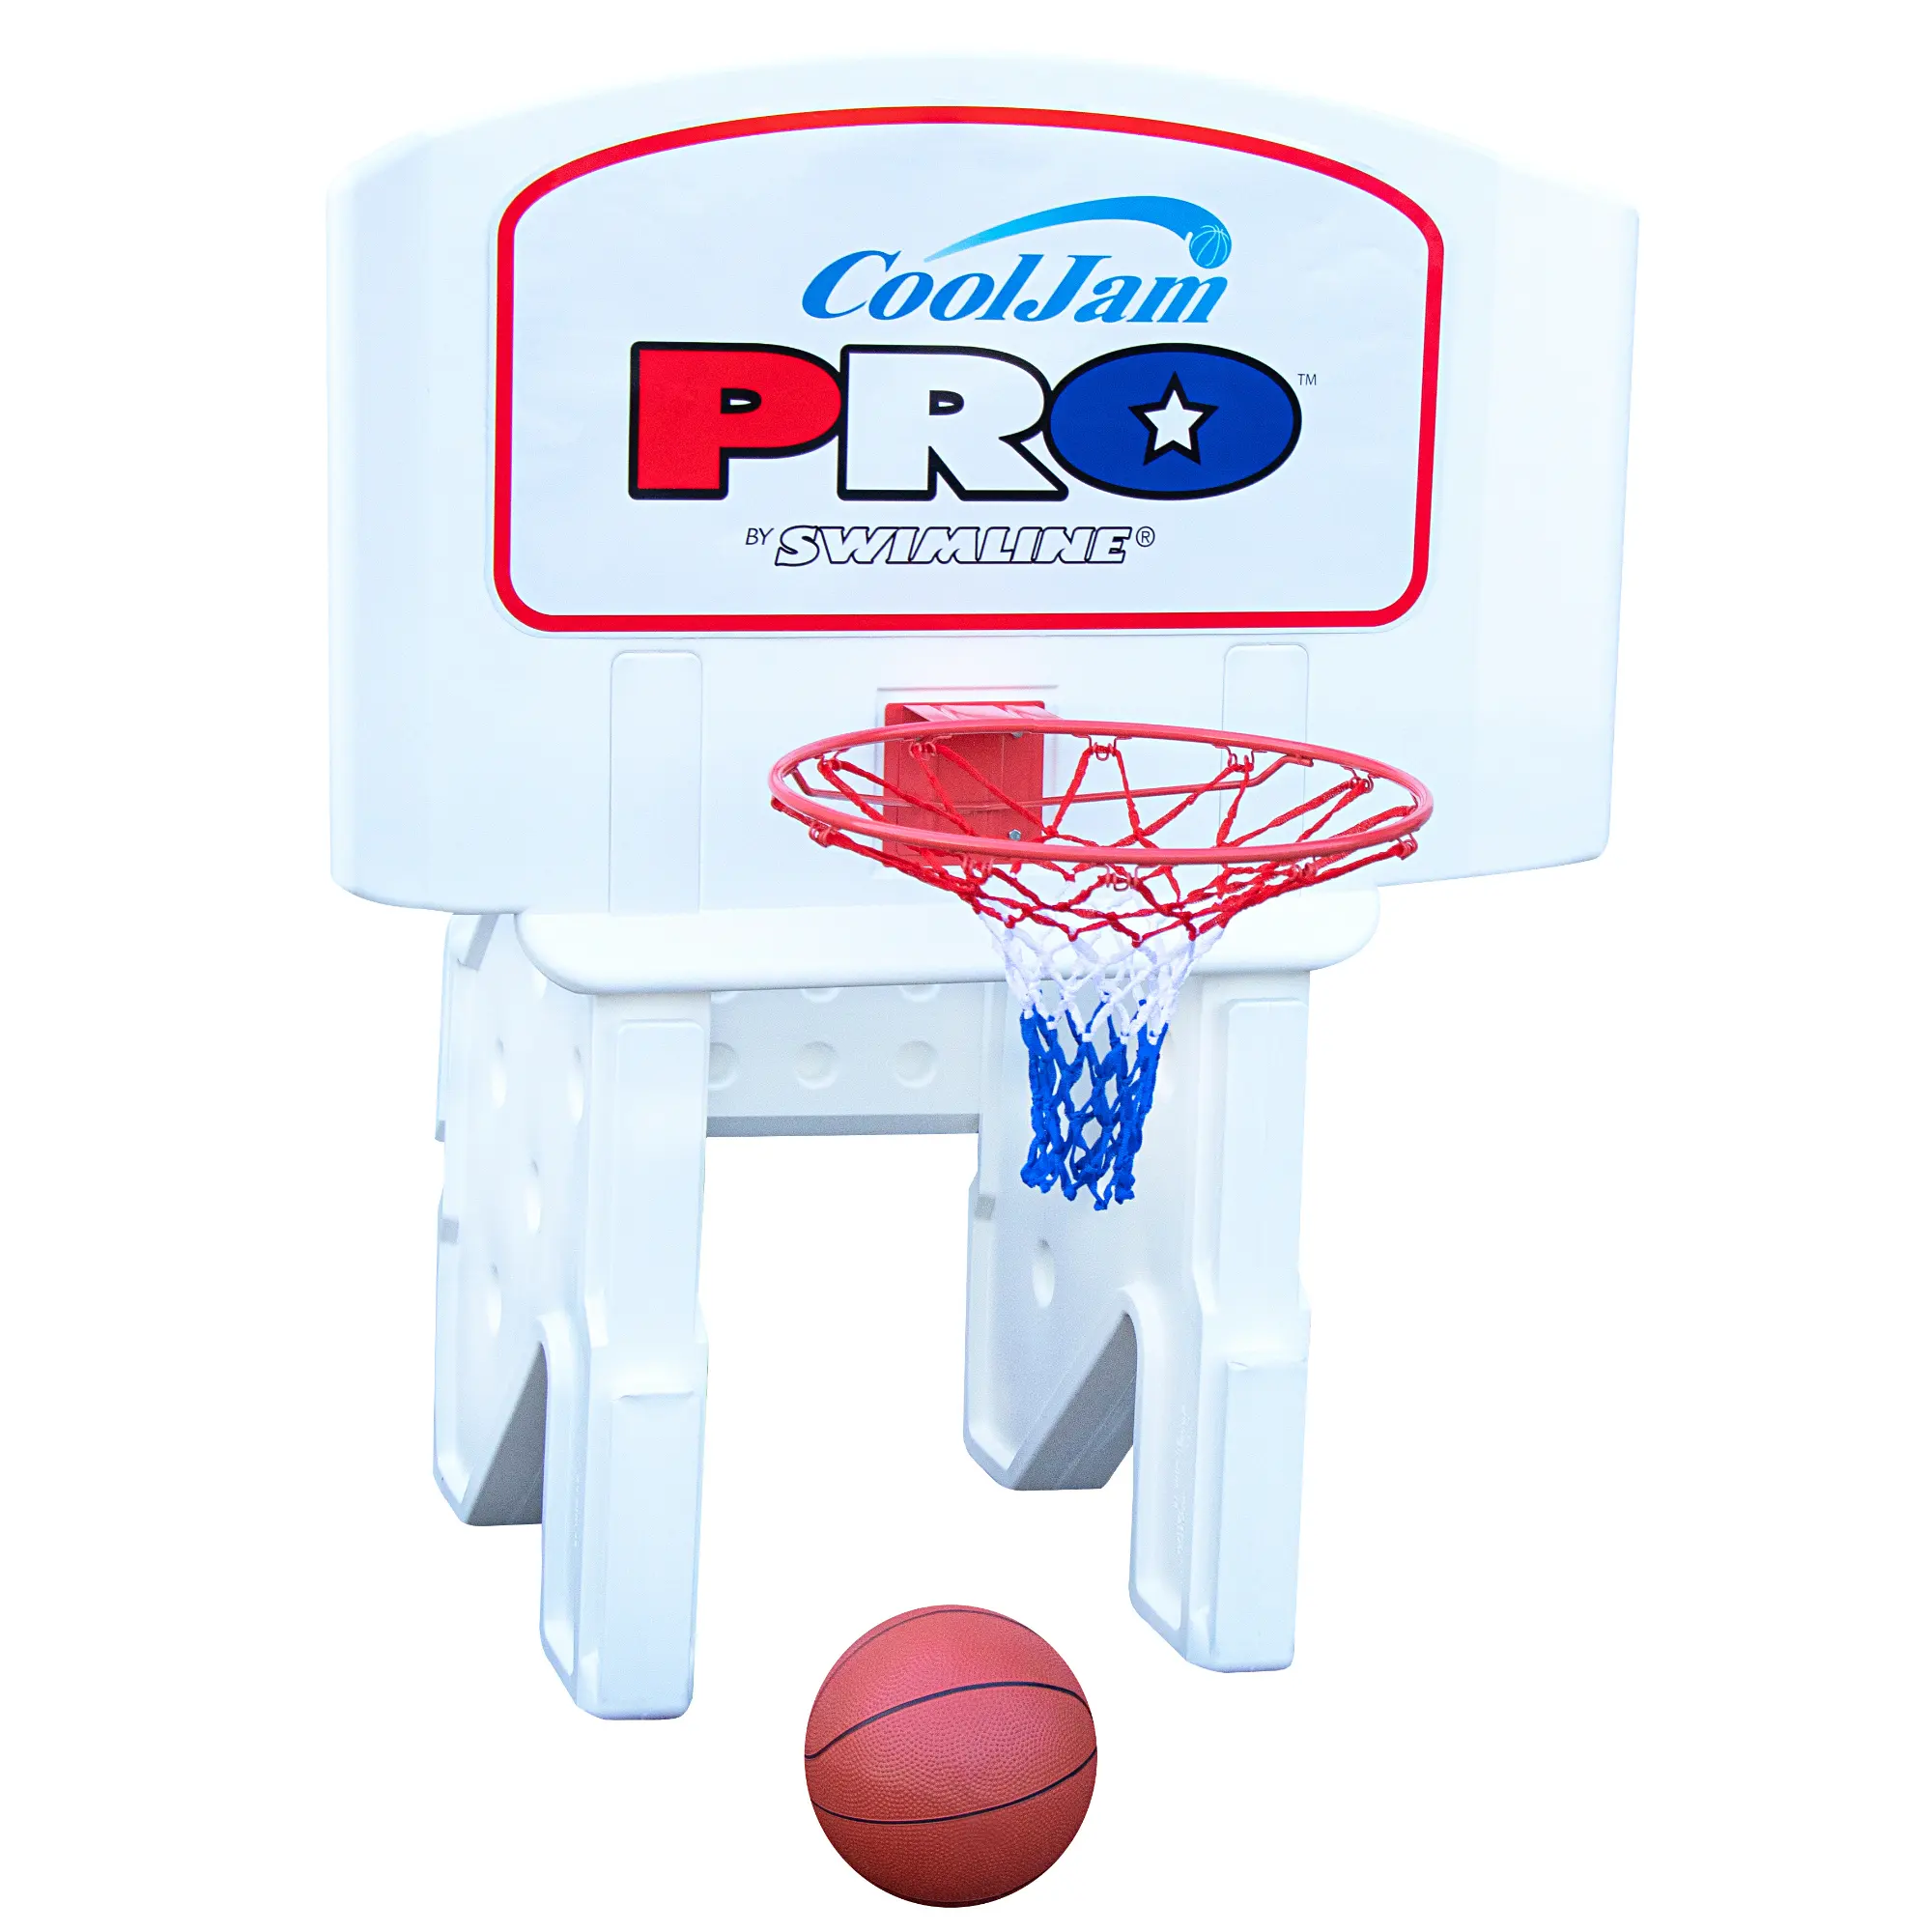 クールジャムヘビーデューティー成形プールサイドバスケットボールゲーム、水加重ベース調整可能なバックボードリアルフィールリムとバスケットボール